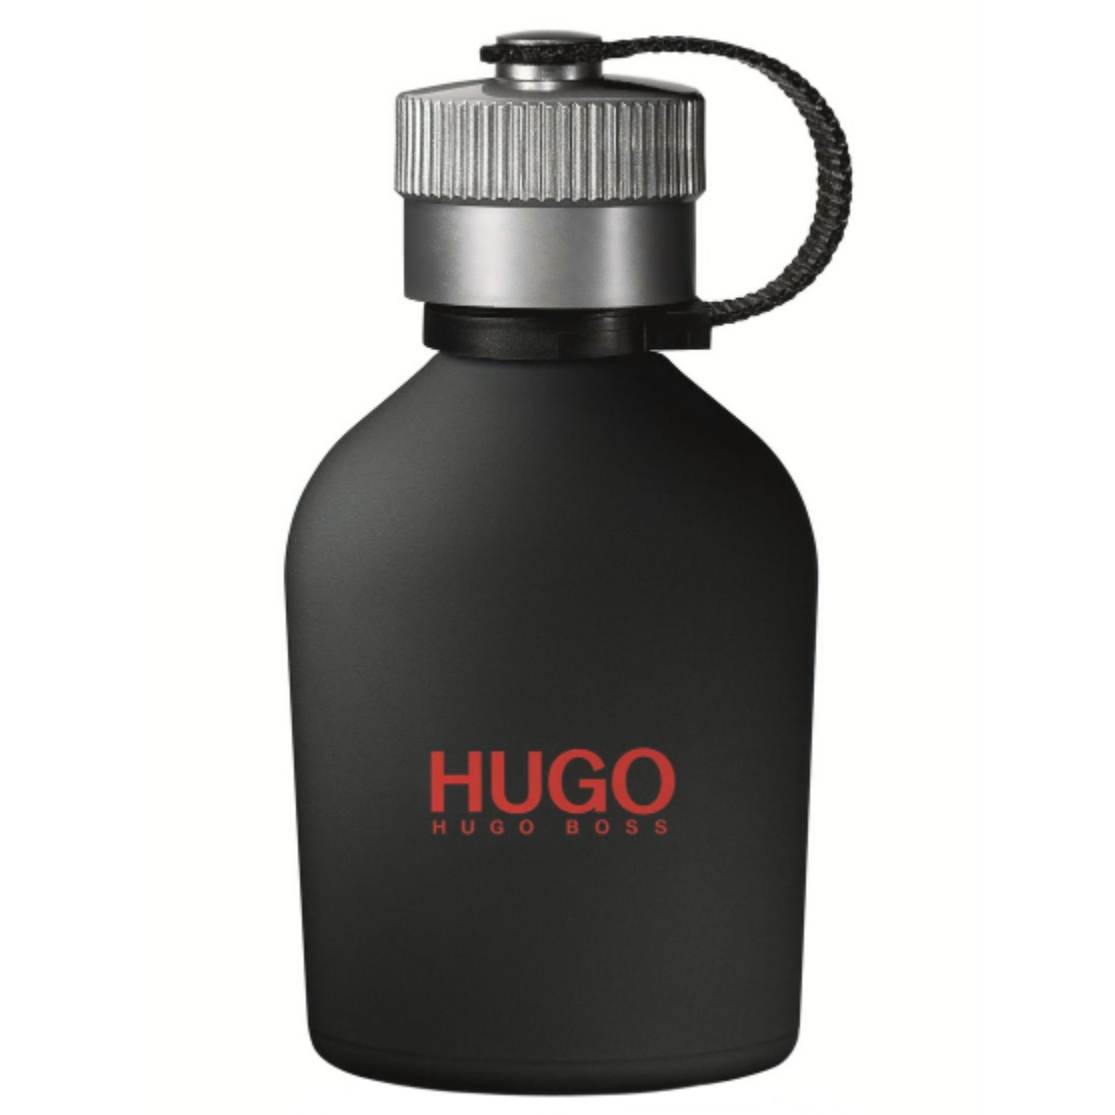 Hugo Boss - Hugo Just Different EdT